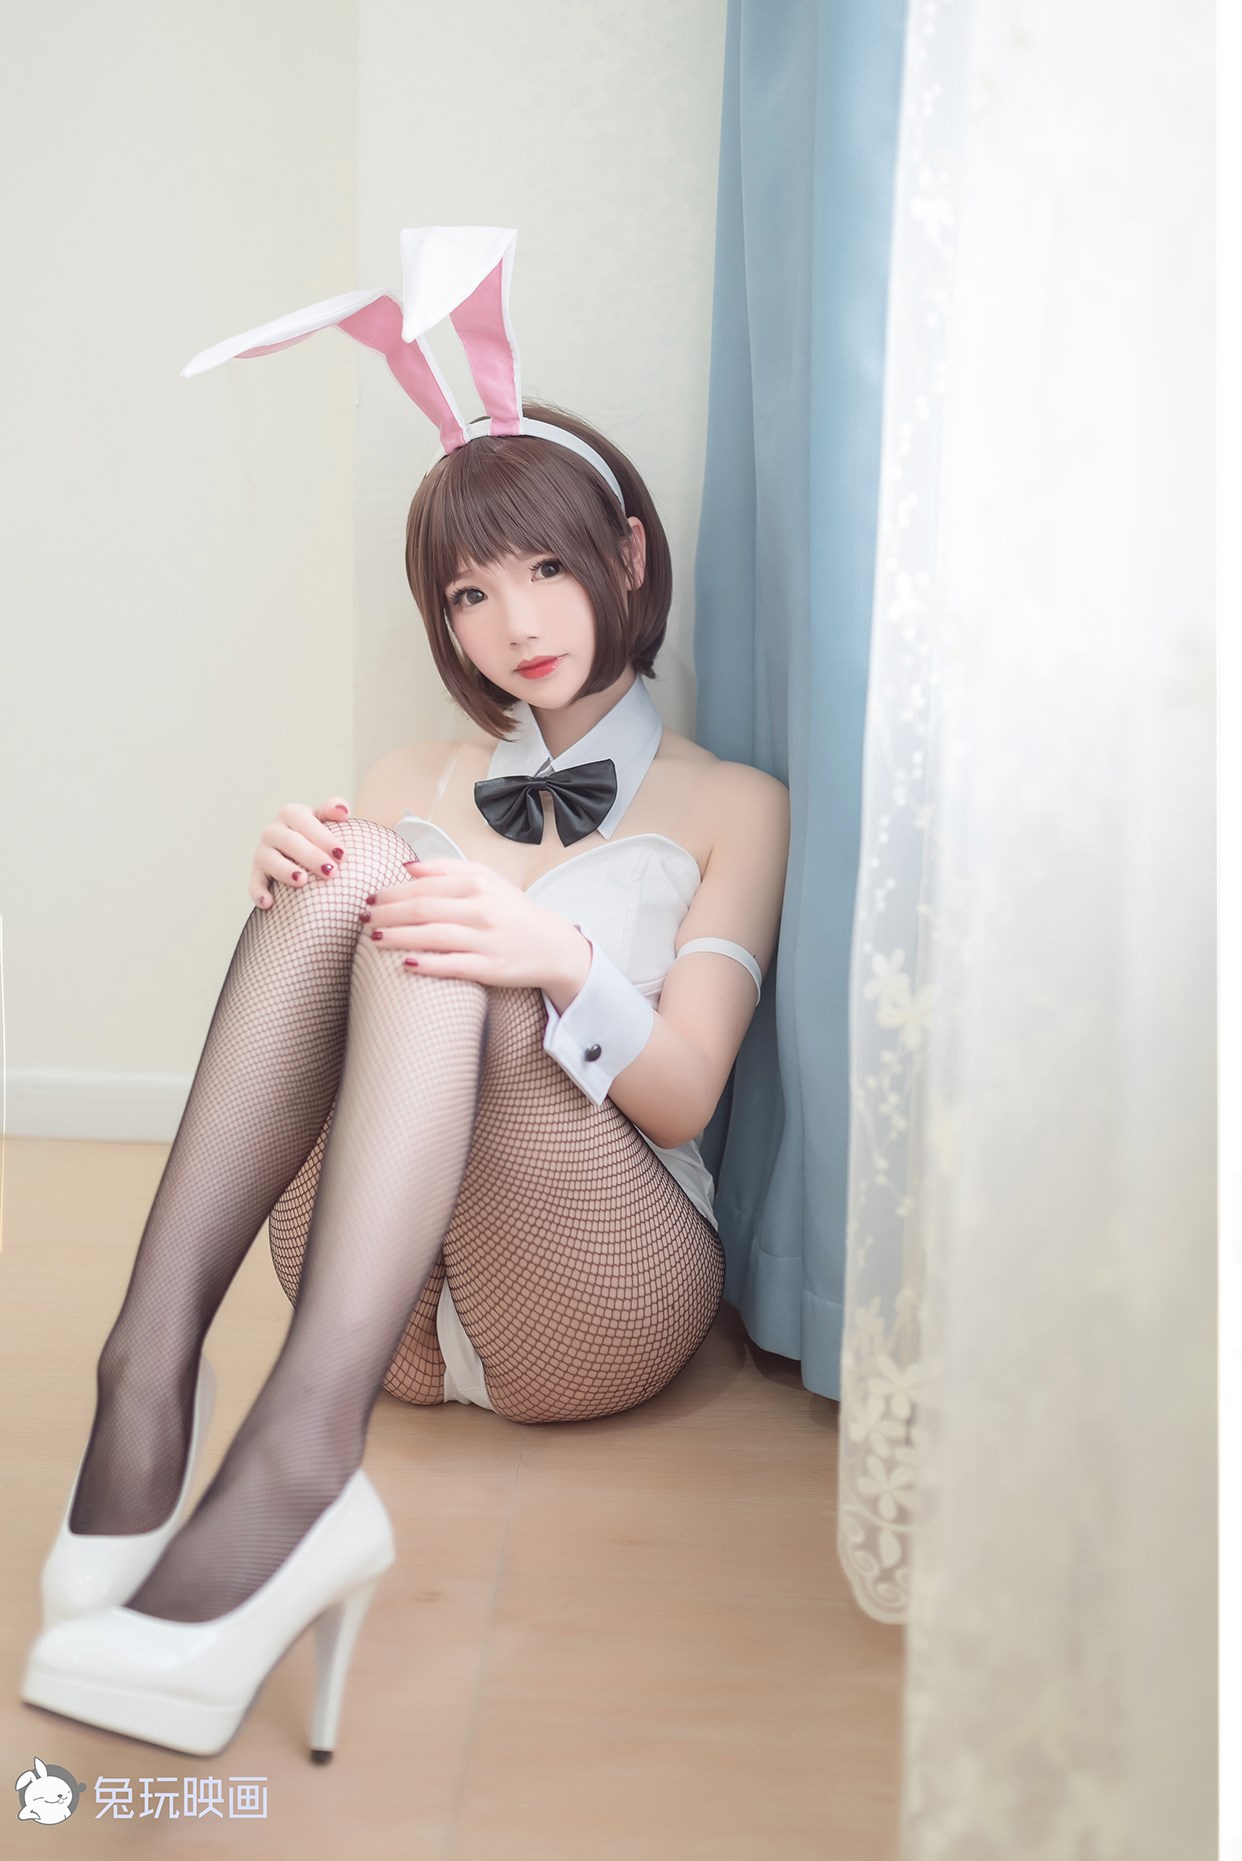 【兔玩映画】vol.06 - 加藤惠 兔玩映画 第10张